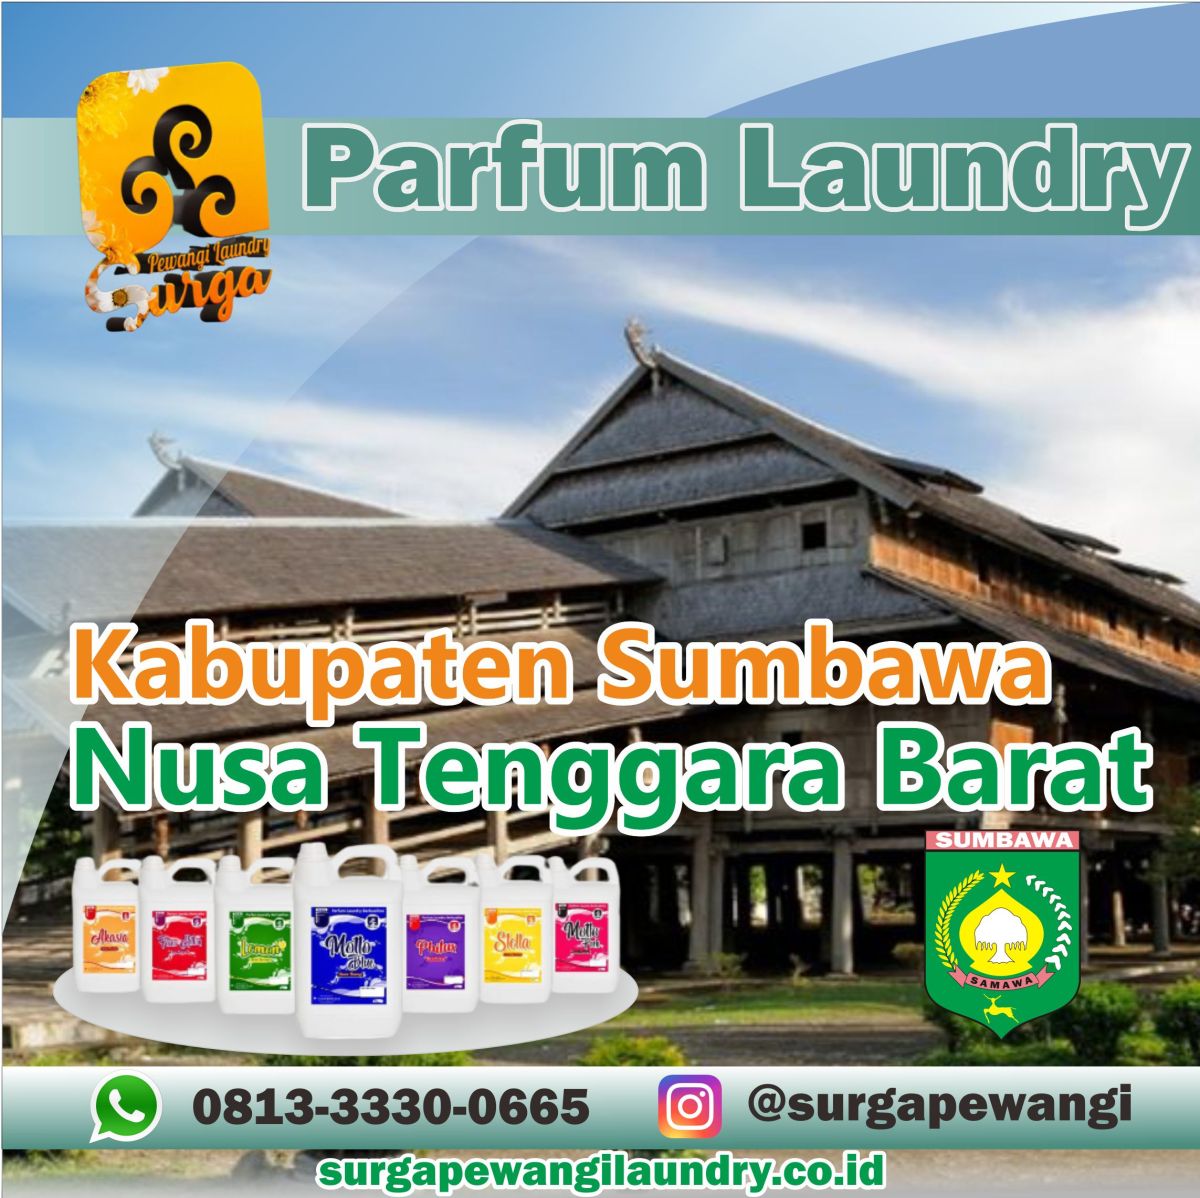 Parfum Laundry Kabupaten Sumbawa, Nusa Tenggara Barat